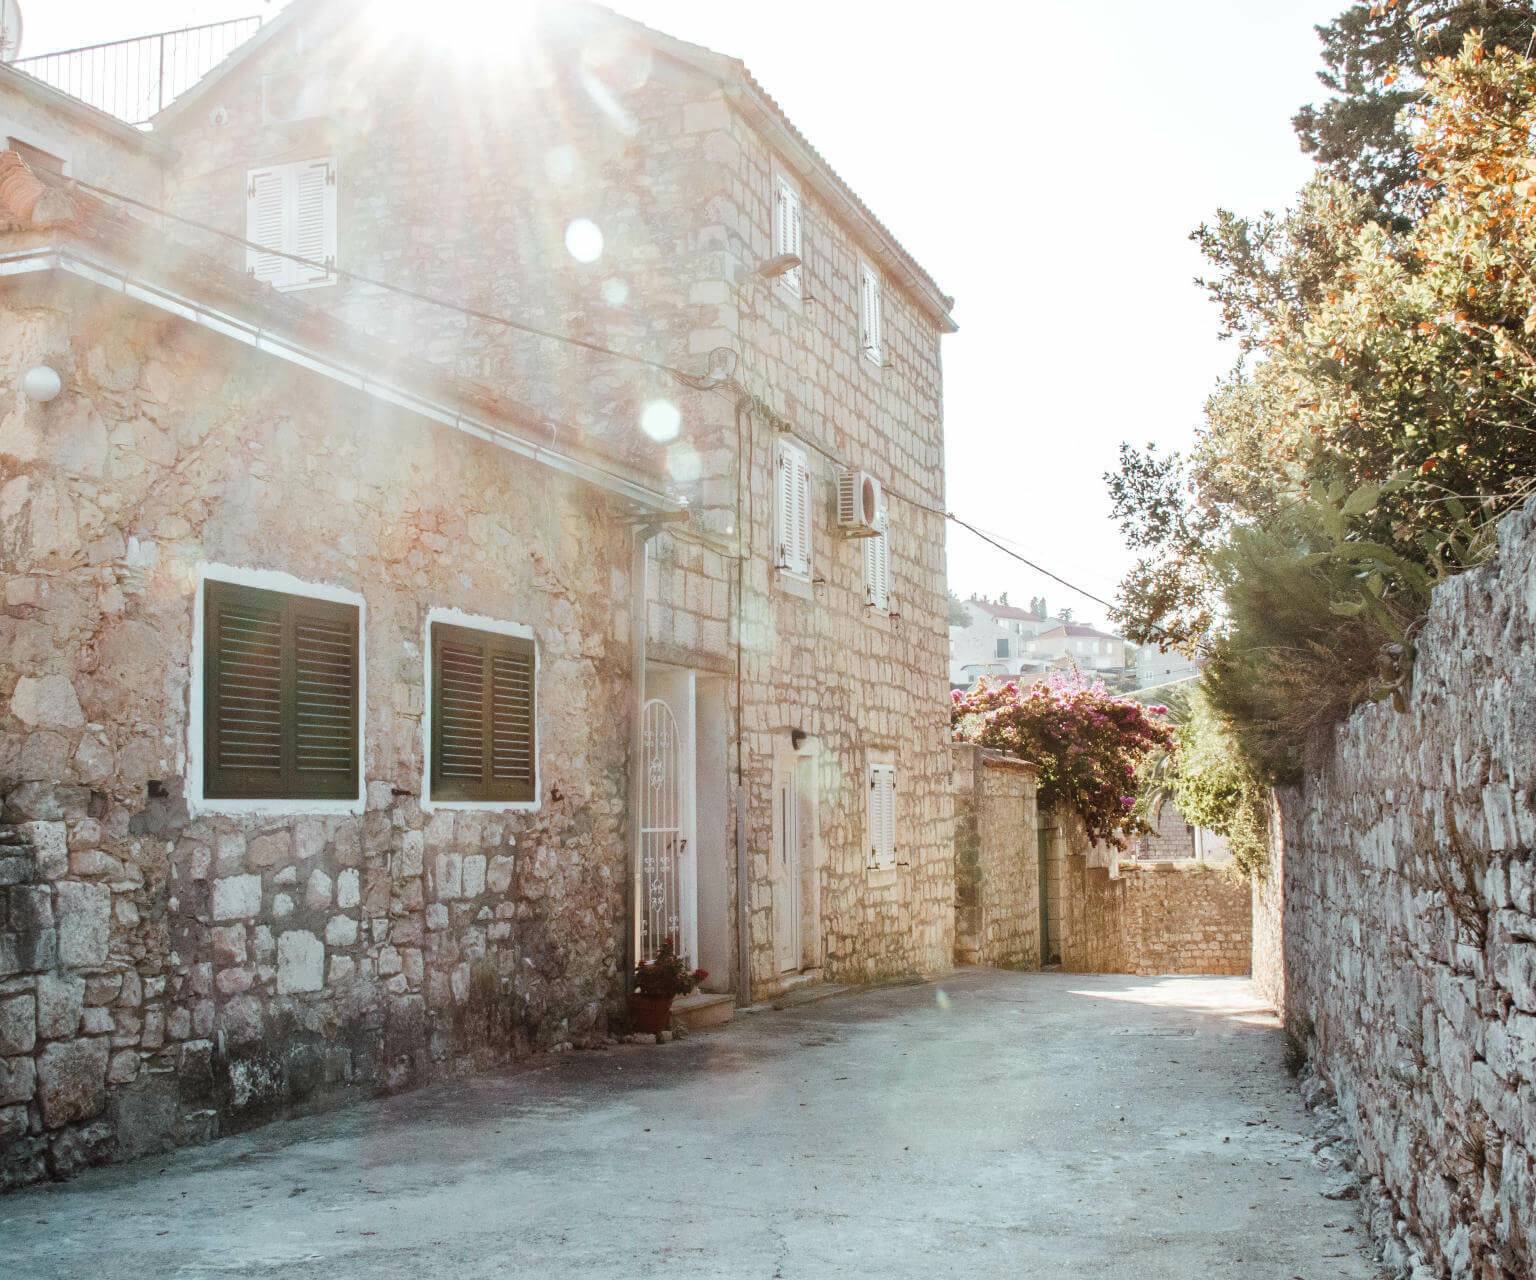 Die kleinen Straßen umgeben von Steinhäusern machen die idyllische Atmosphäre der Altstadt von Sutivan auf Brac aus - ein Geheimtipp für Entdecker, die auf ihrer Kroatien Reise Split besuchen.